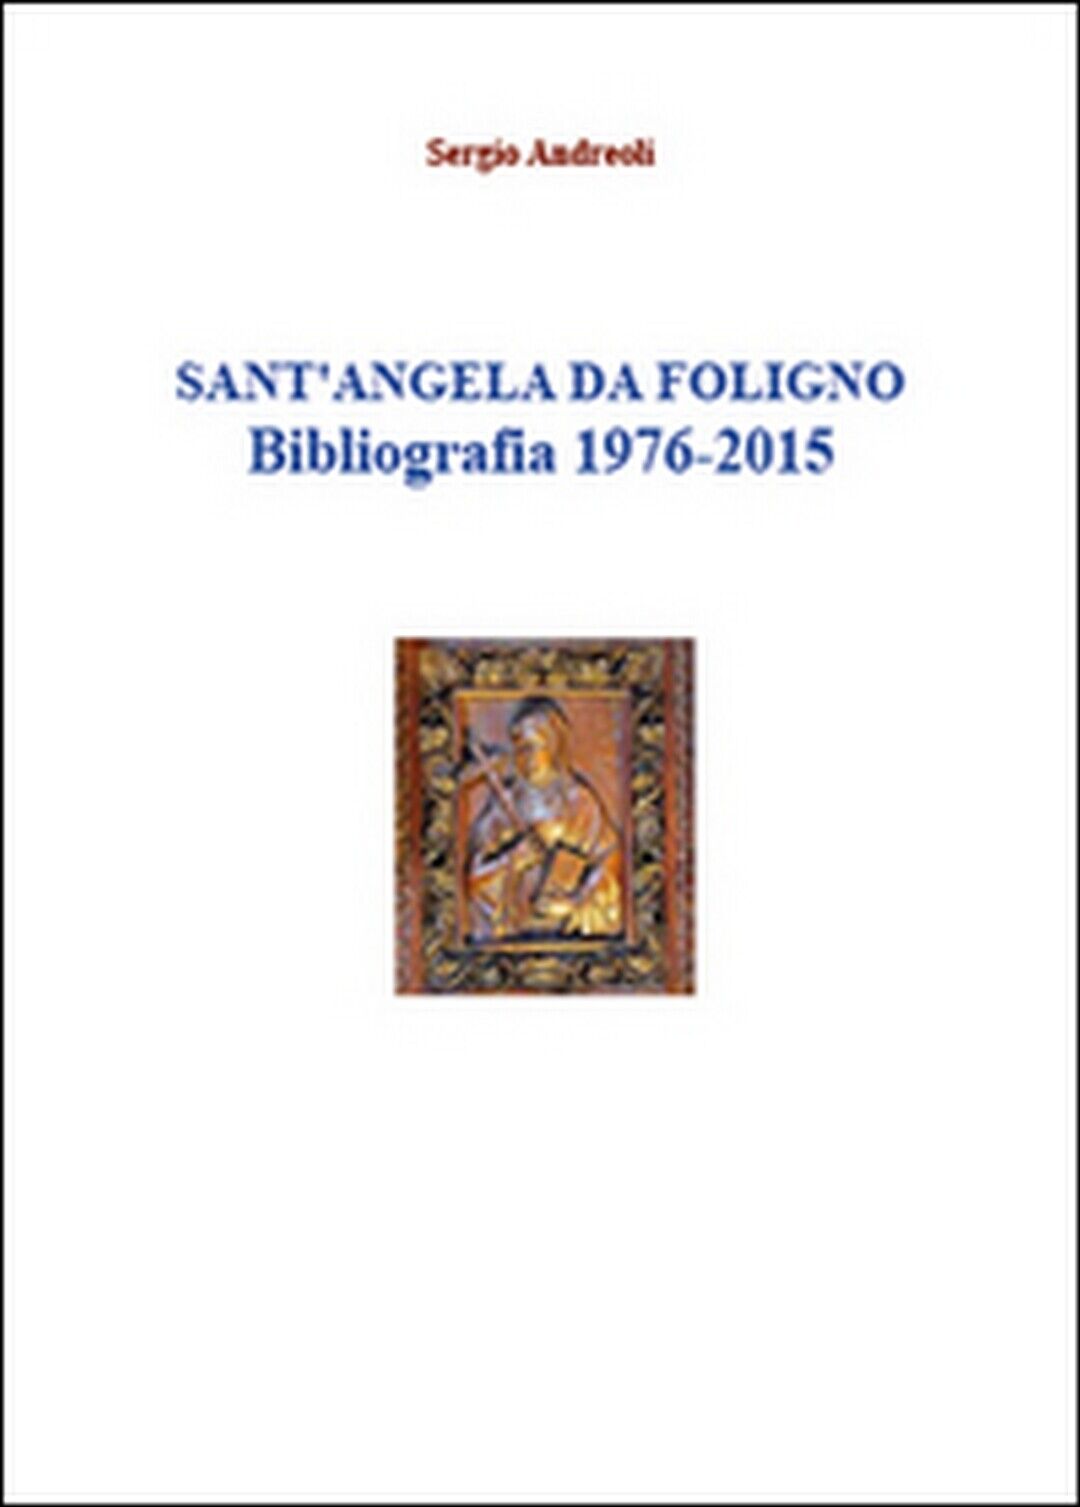 Sant?Angela da Foligno. Bibliografia 1976-2015  di Sergio Andreoli,  2015 libro usato